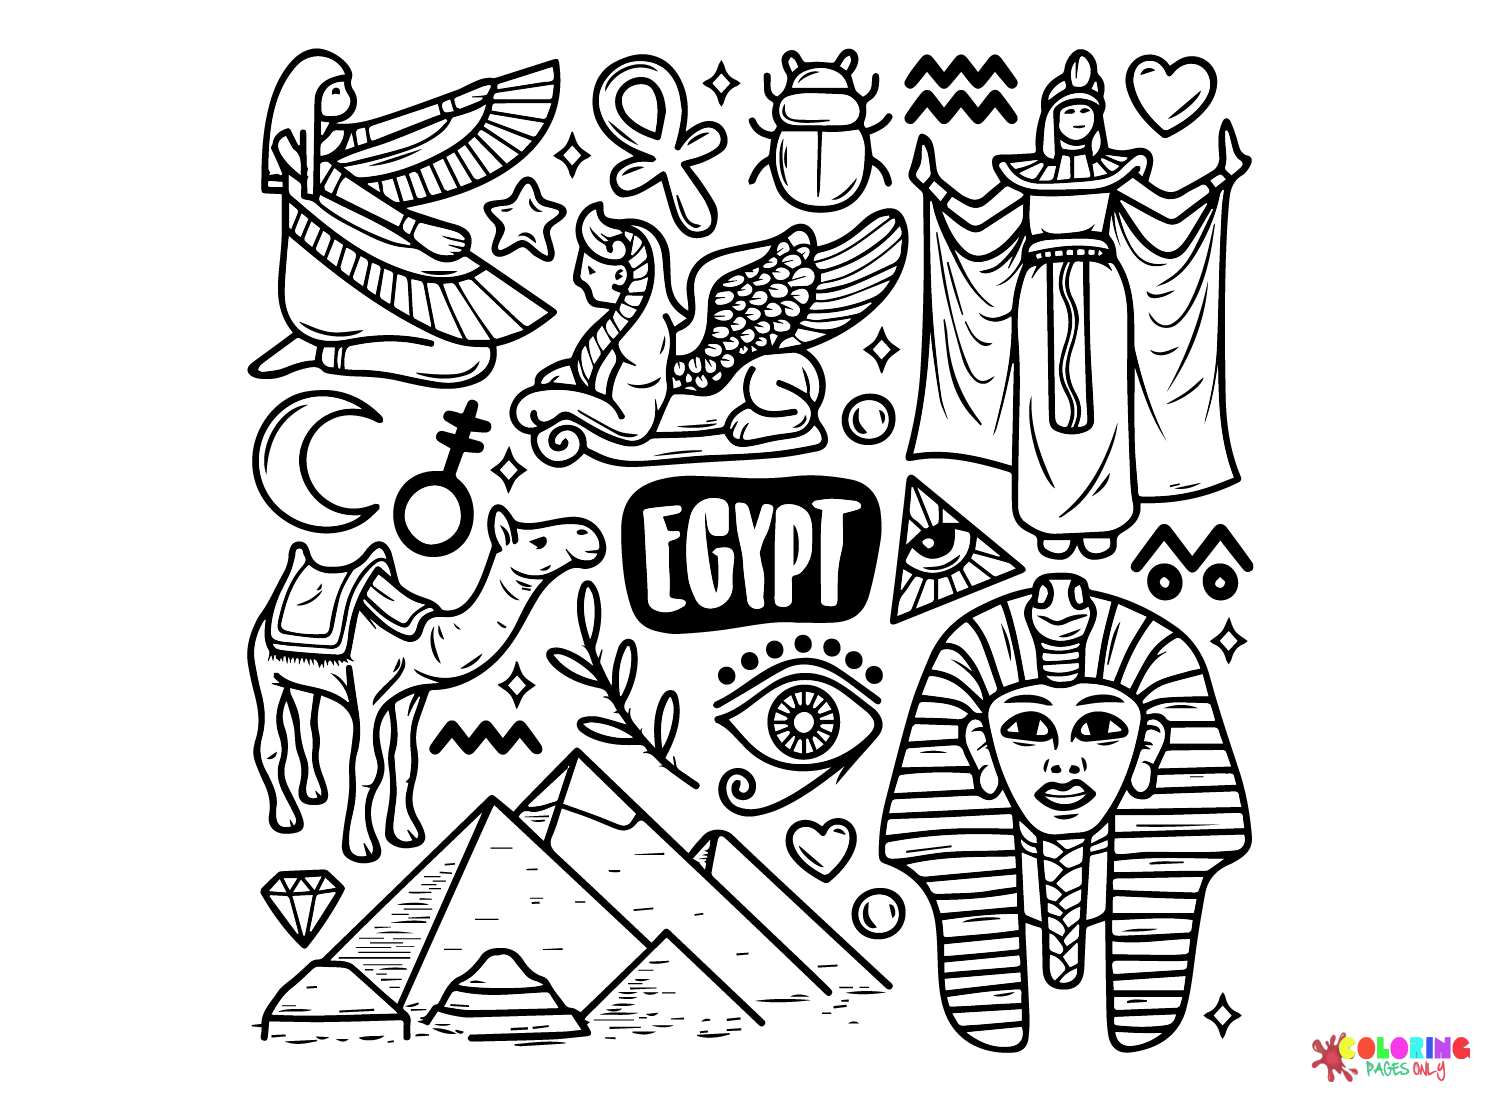 Kostenlose Vektor-Ägypten-Symbole, handgezeichnetes Gekritzel aus dem alten Ägypten